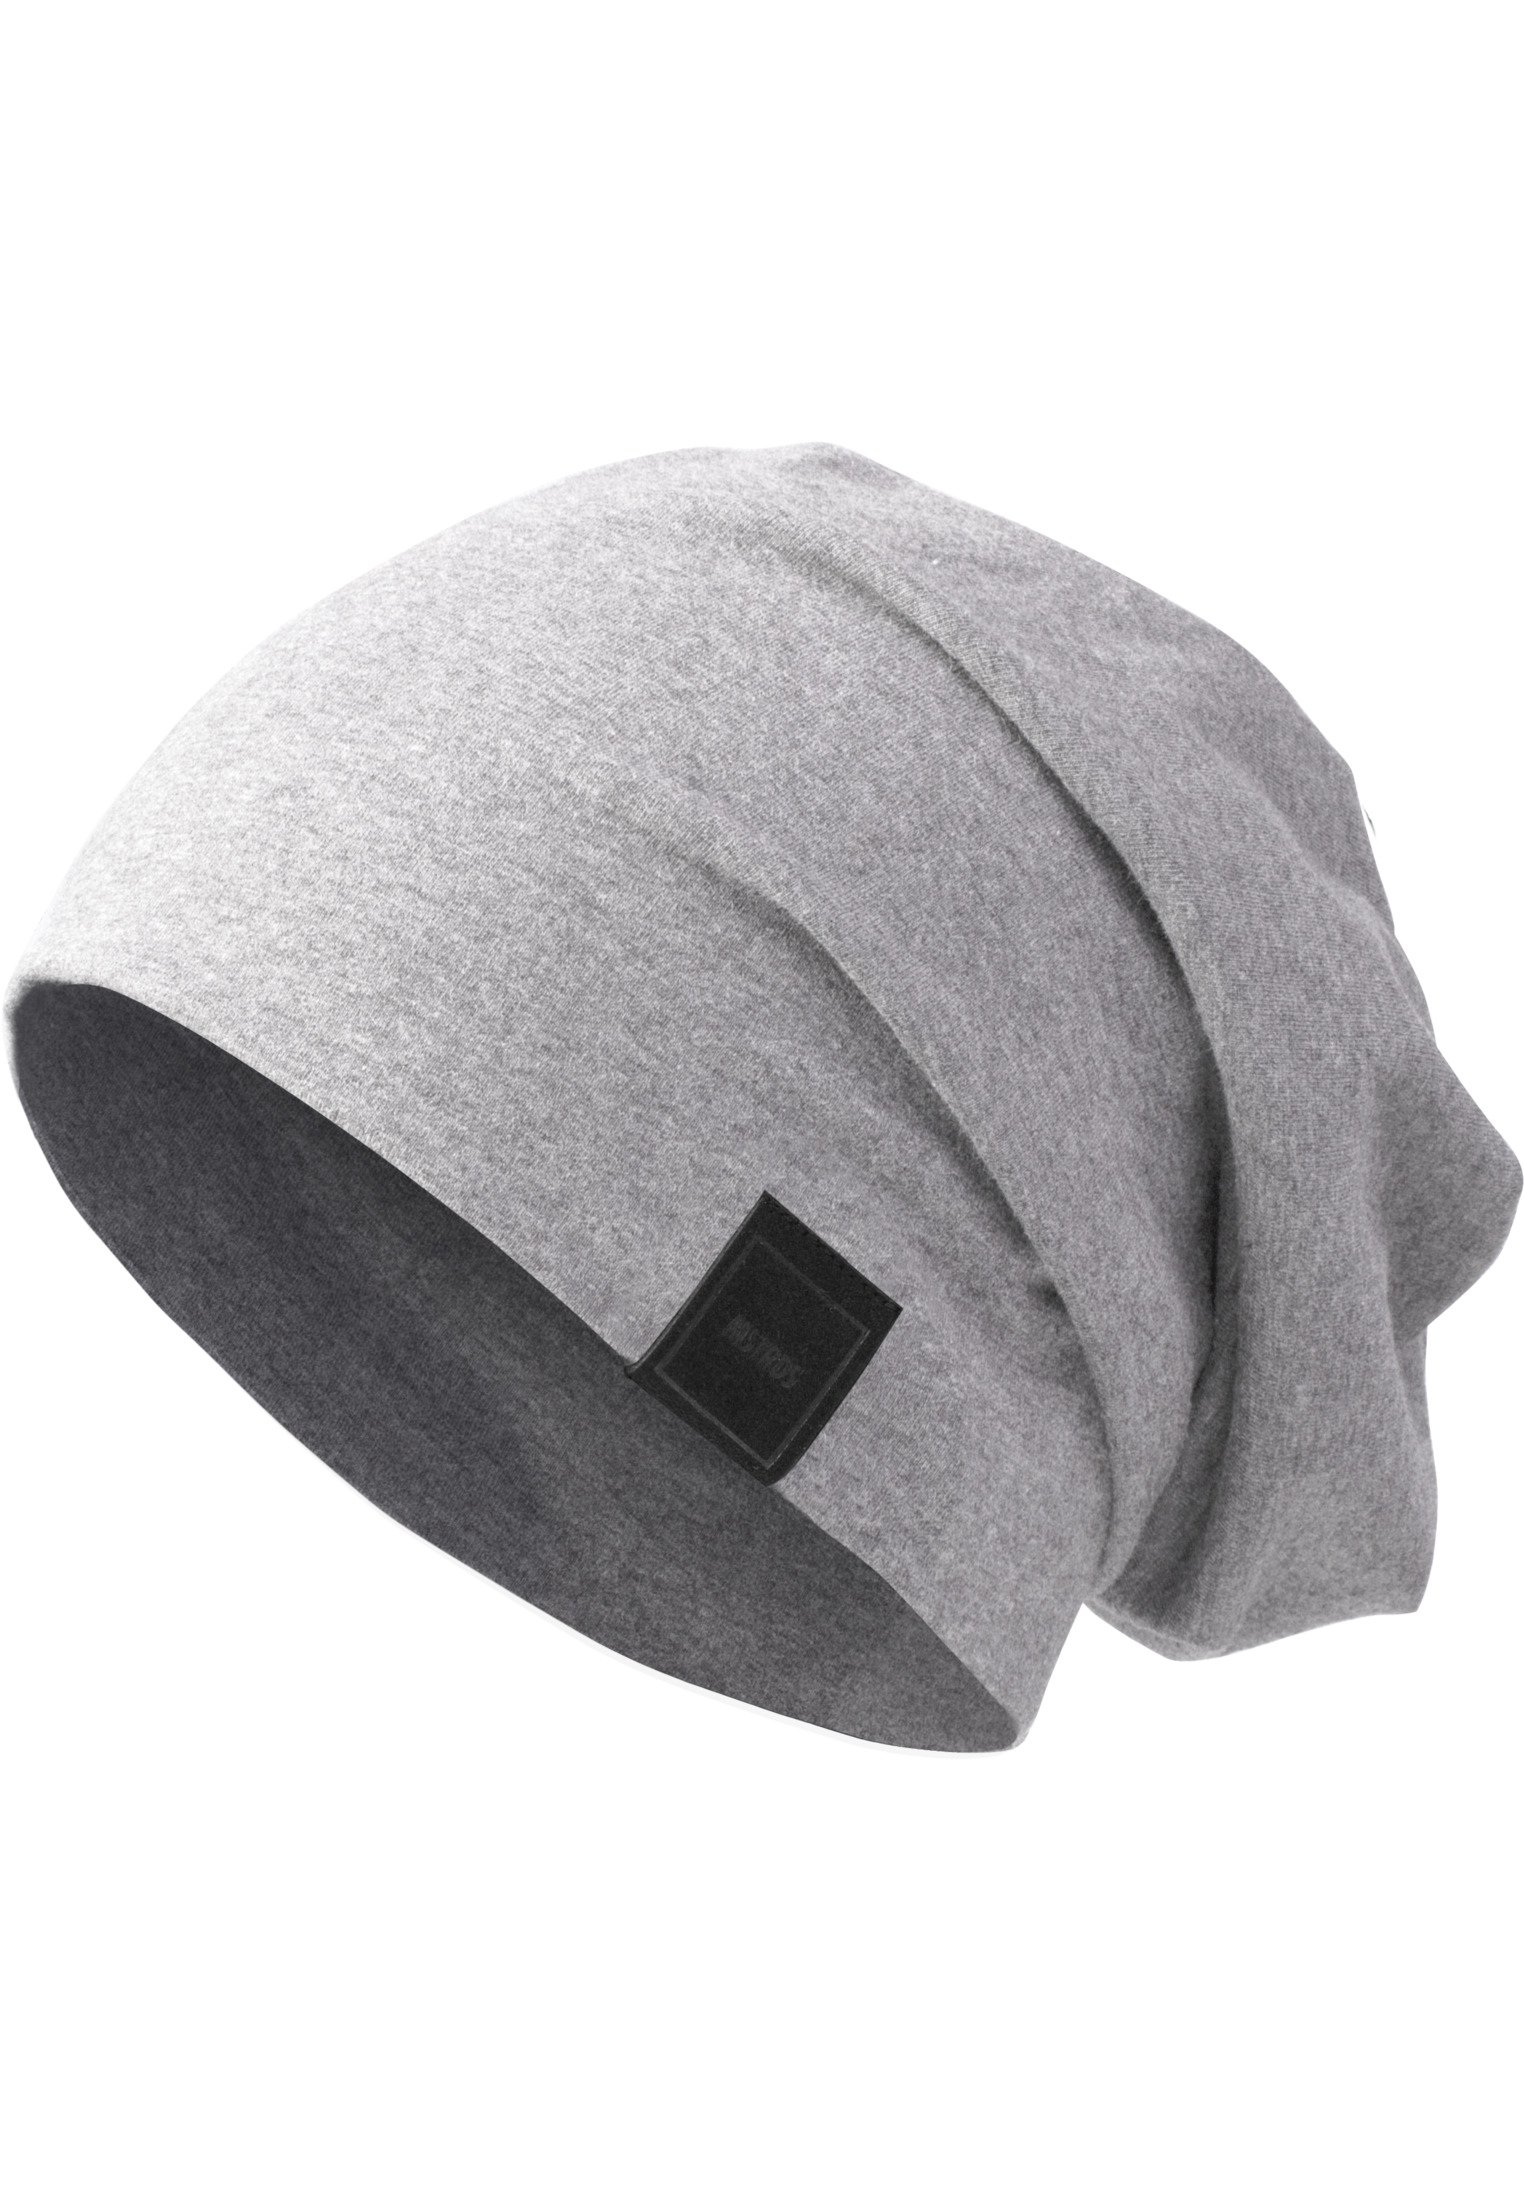 Jersey Beanie Mütze für Erwachsene und Kinder h.grey L/XL